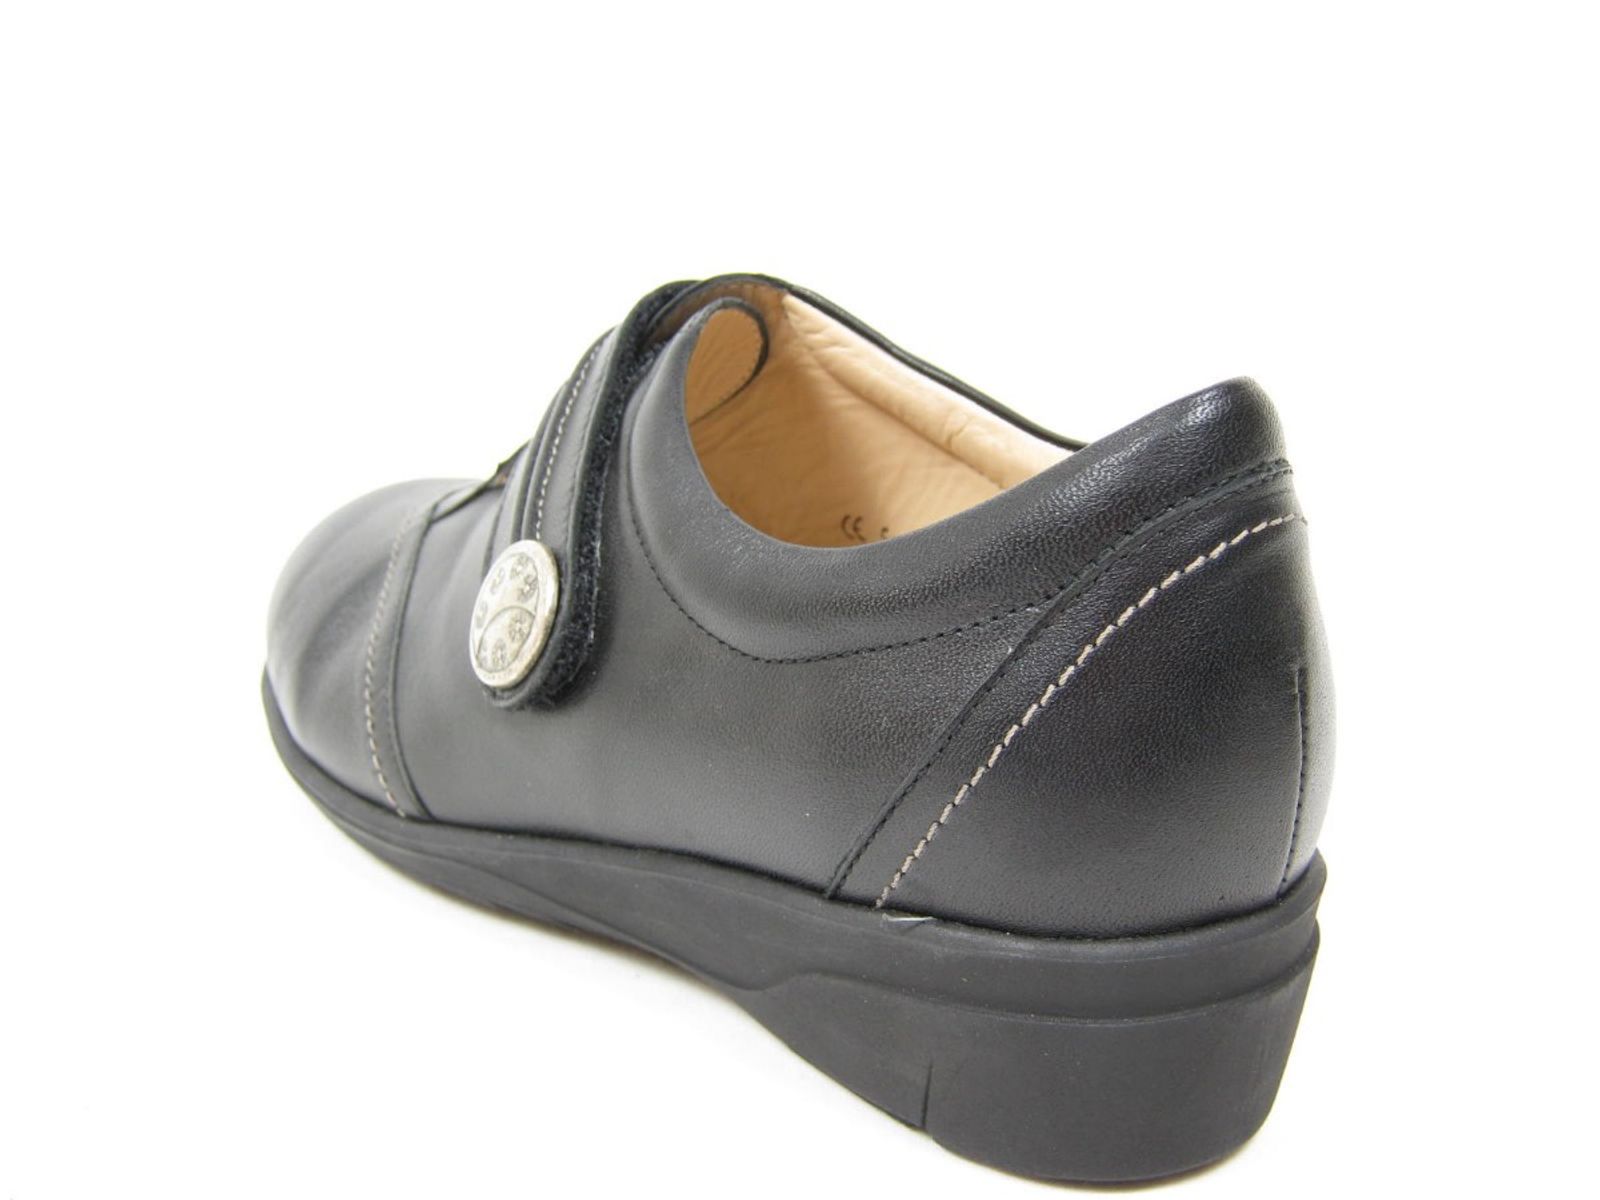 Schuh von Finn Comfort, 2